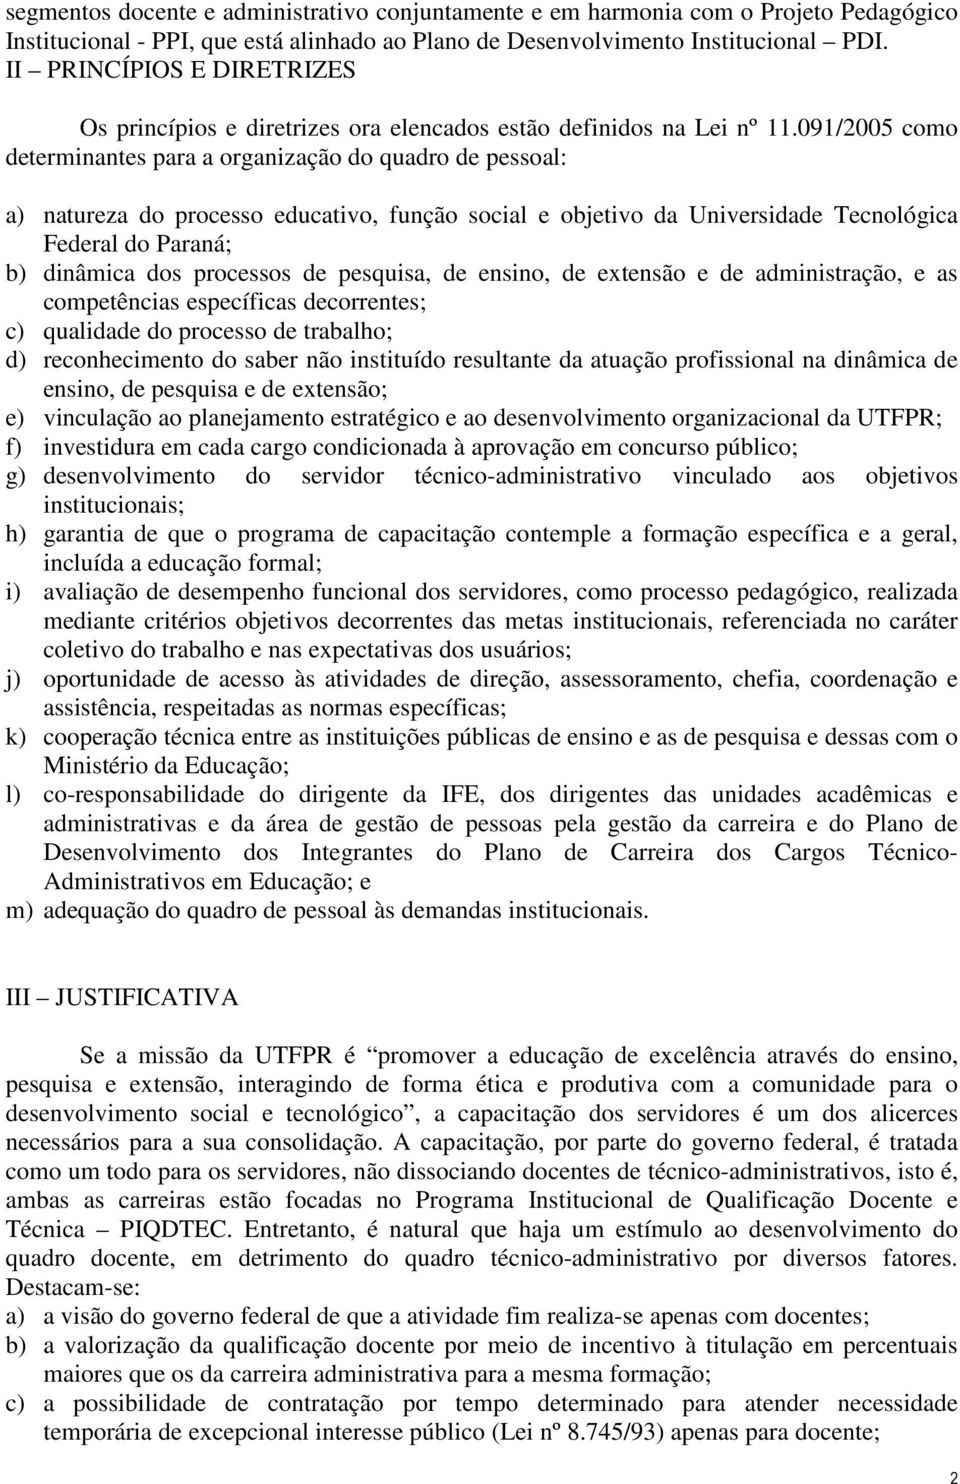 091/2005 como determinantes para a organização do quadro de pessoal: a) natureza do processo educativo, função social e objetivo da Universidade Tecnológica Federal do Paraná; b) dinâmica dos